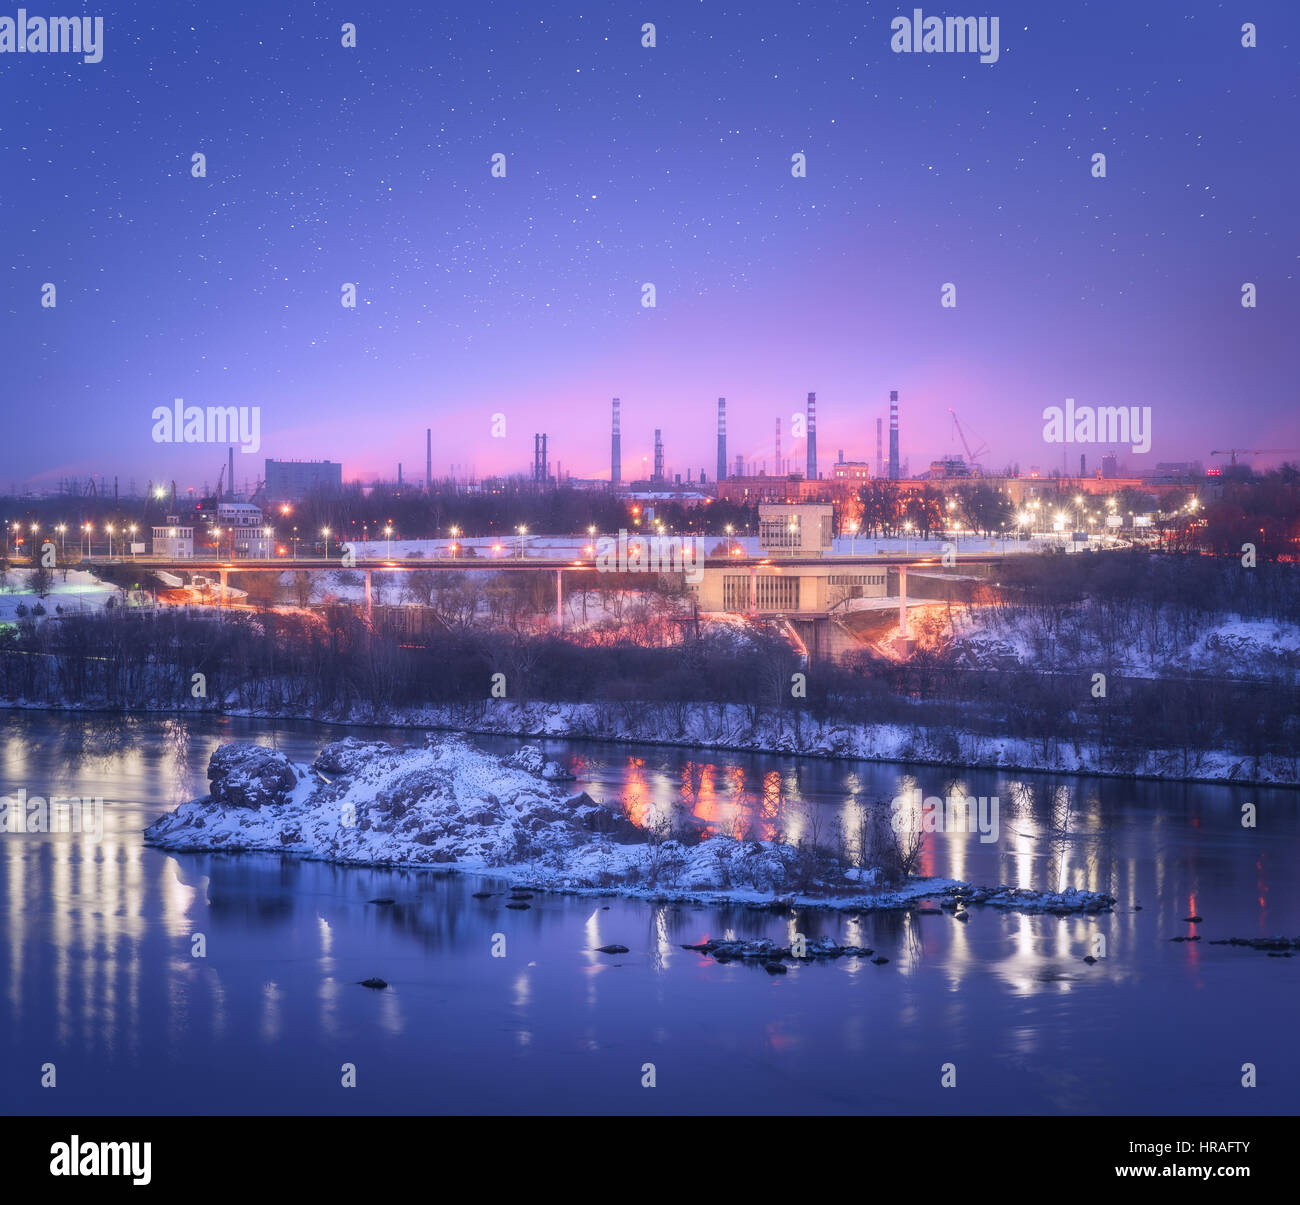 Nuit paysage urbain avec purple sky coloré avec des étoiles, rochers, rivière, arbres, bâtiments, illumination de ville et de l'acier usine avec cheminée en hiver Banque D'Images